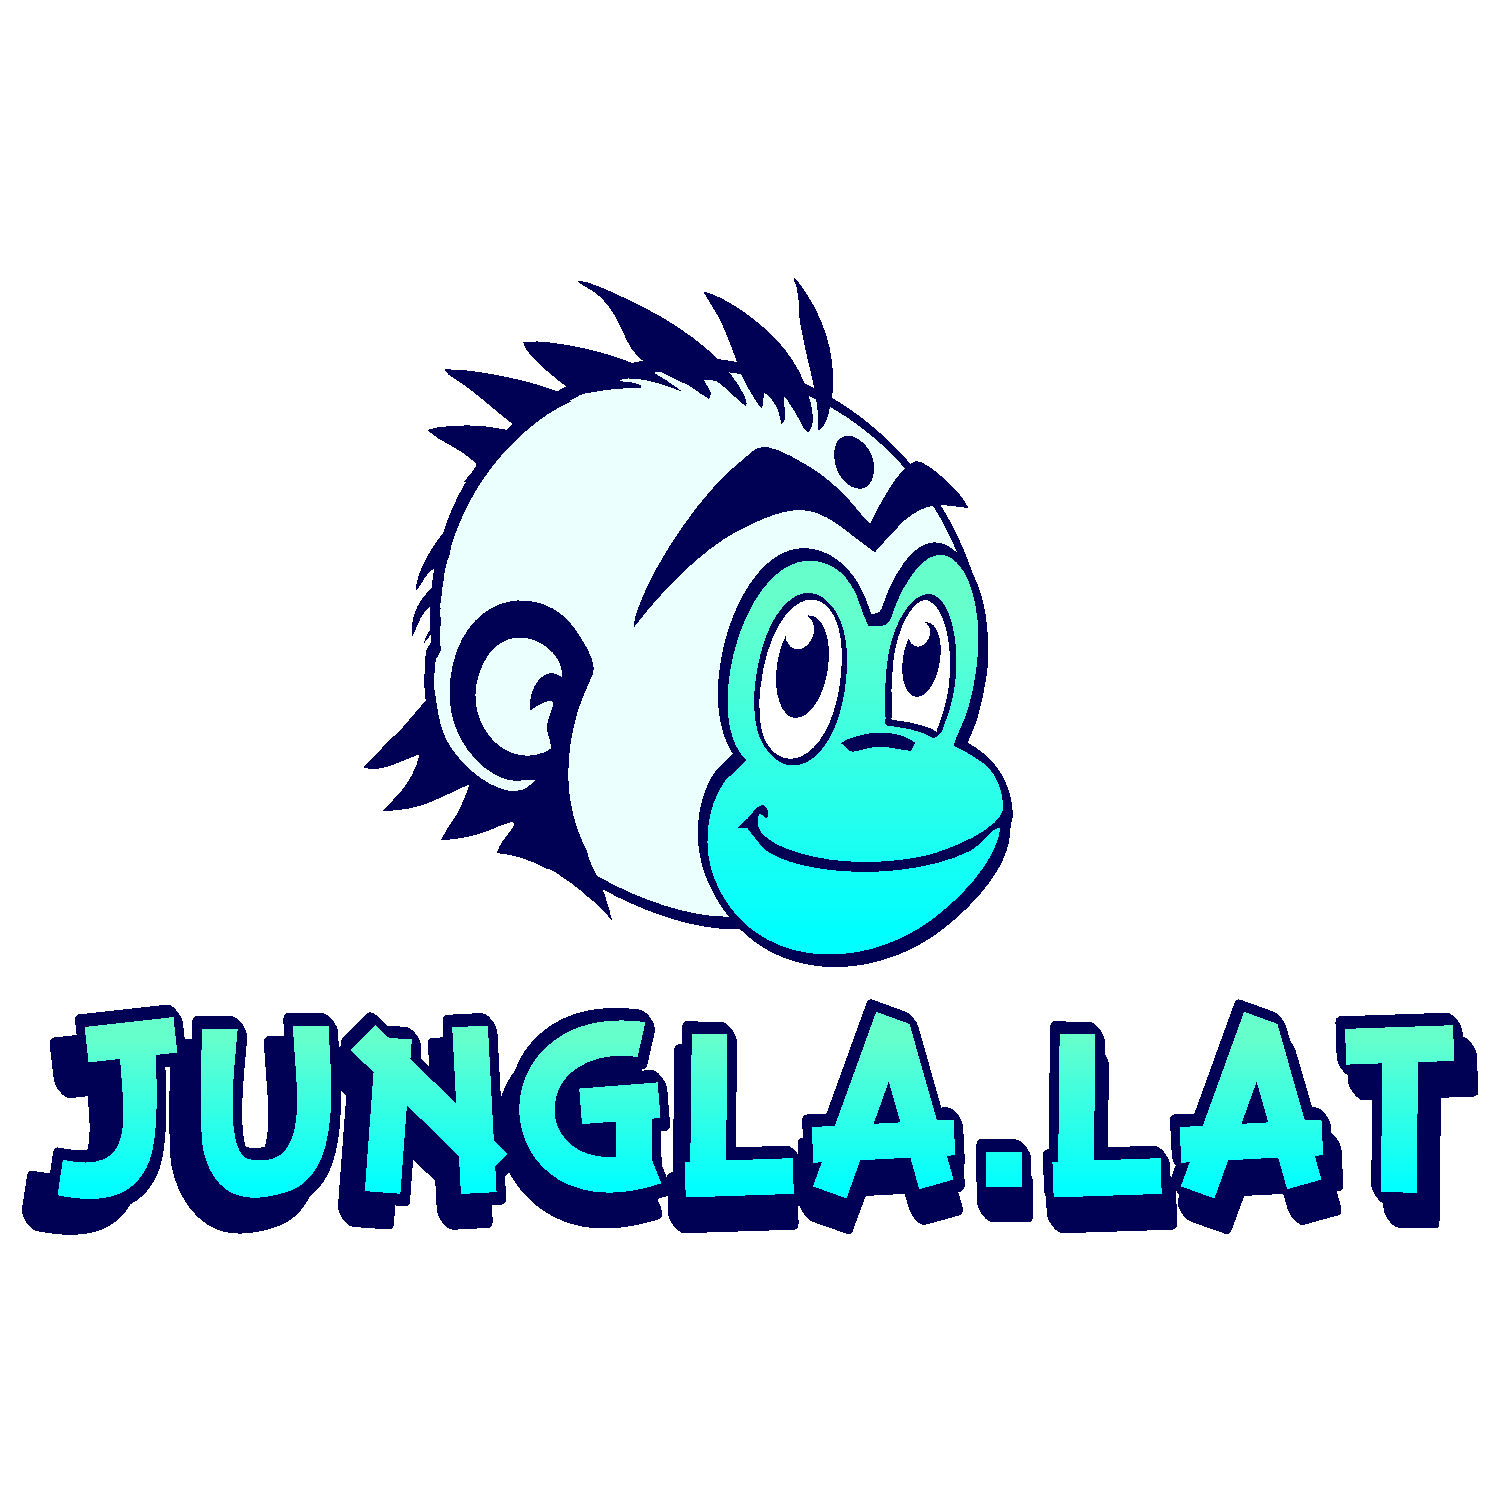 Logo de Jungla.lat